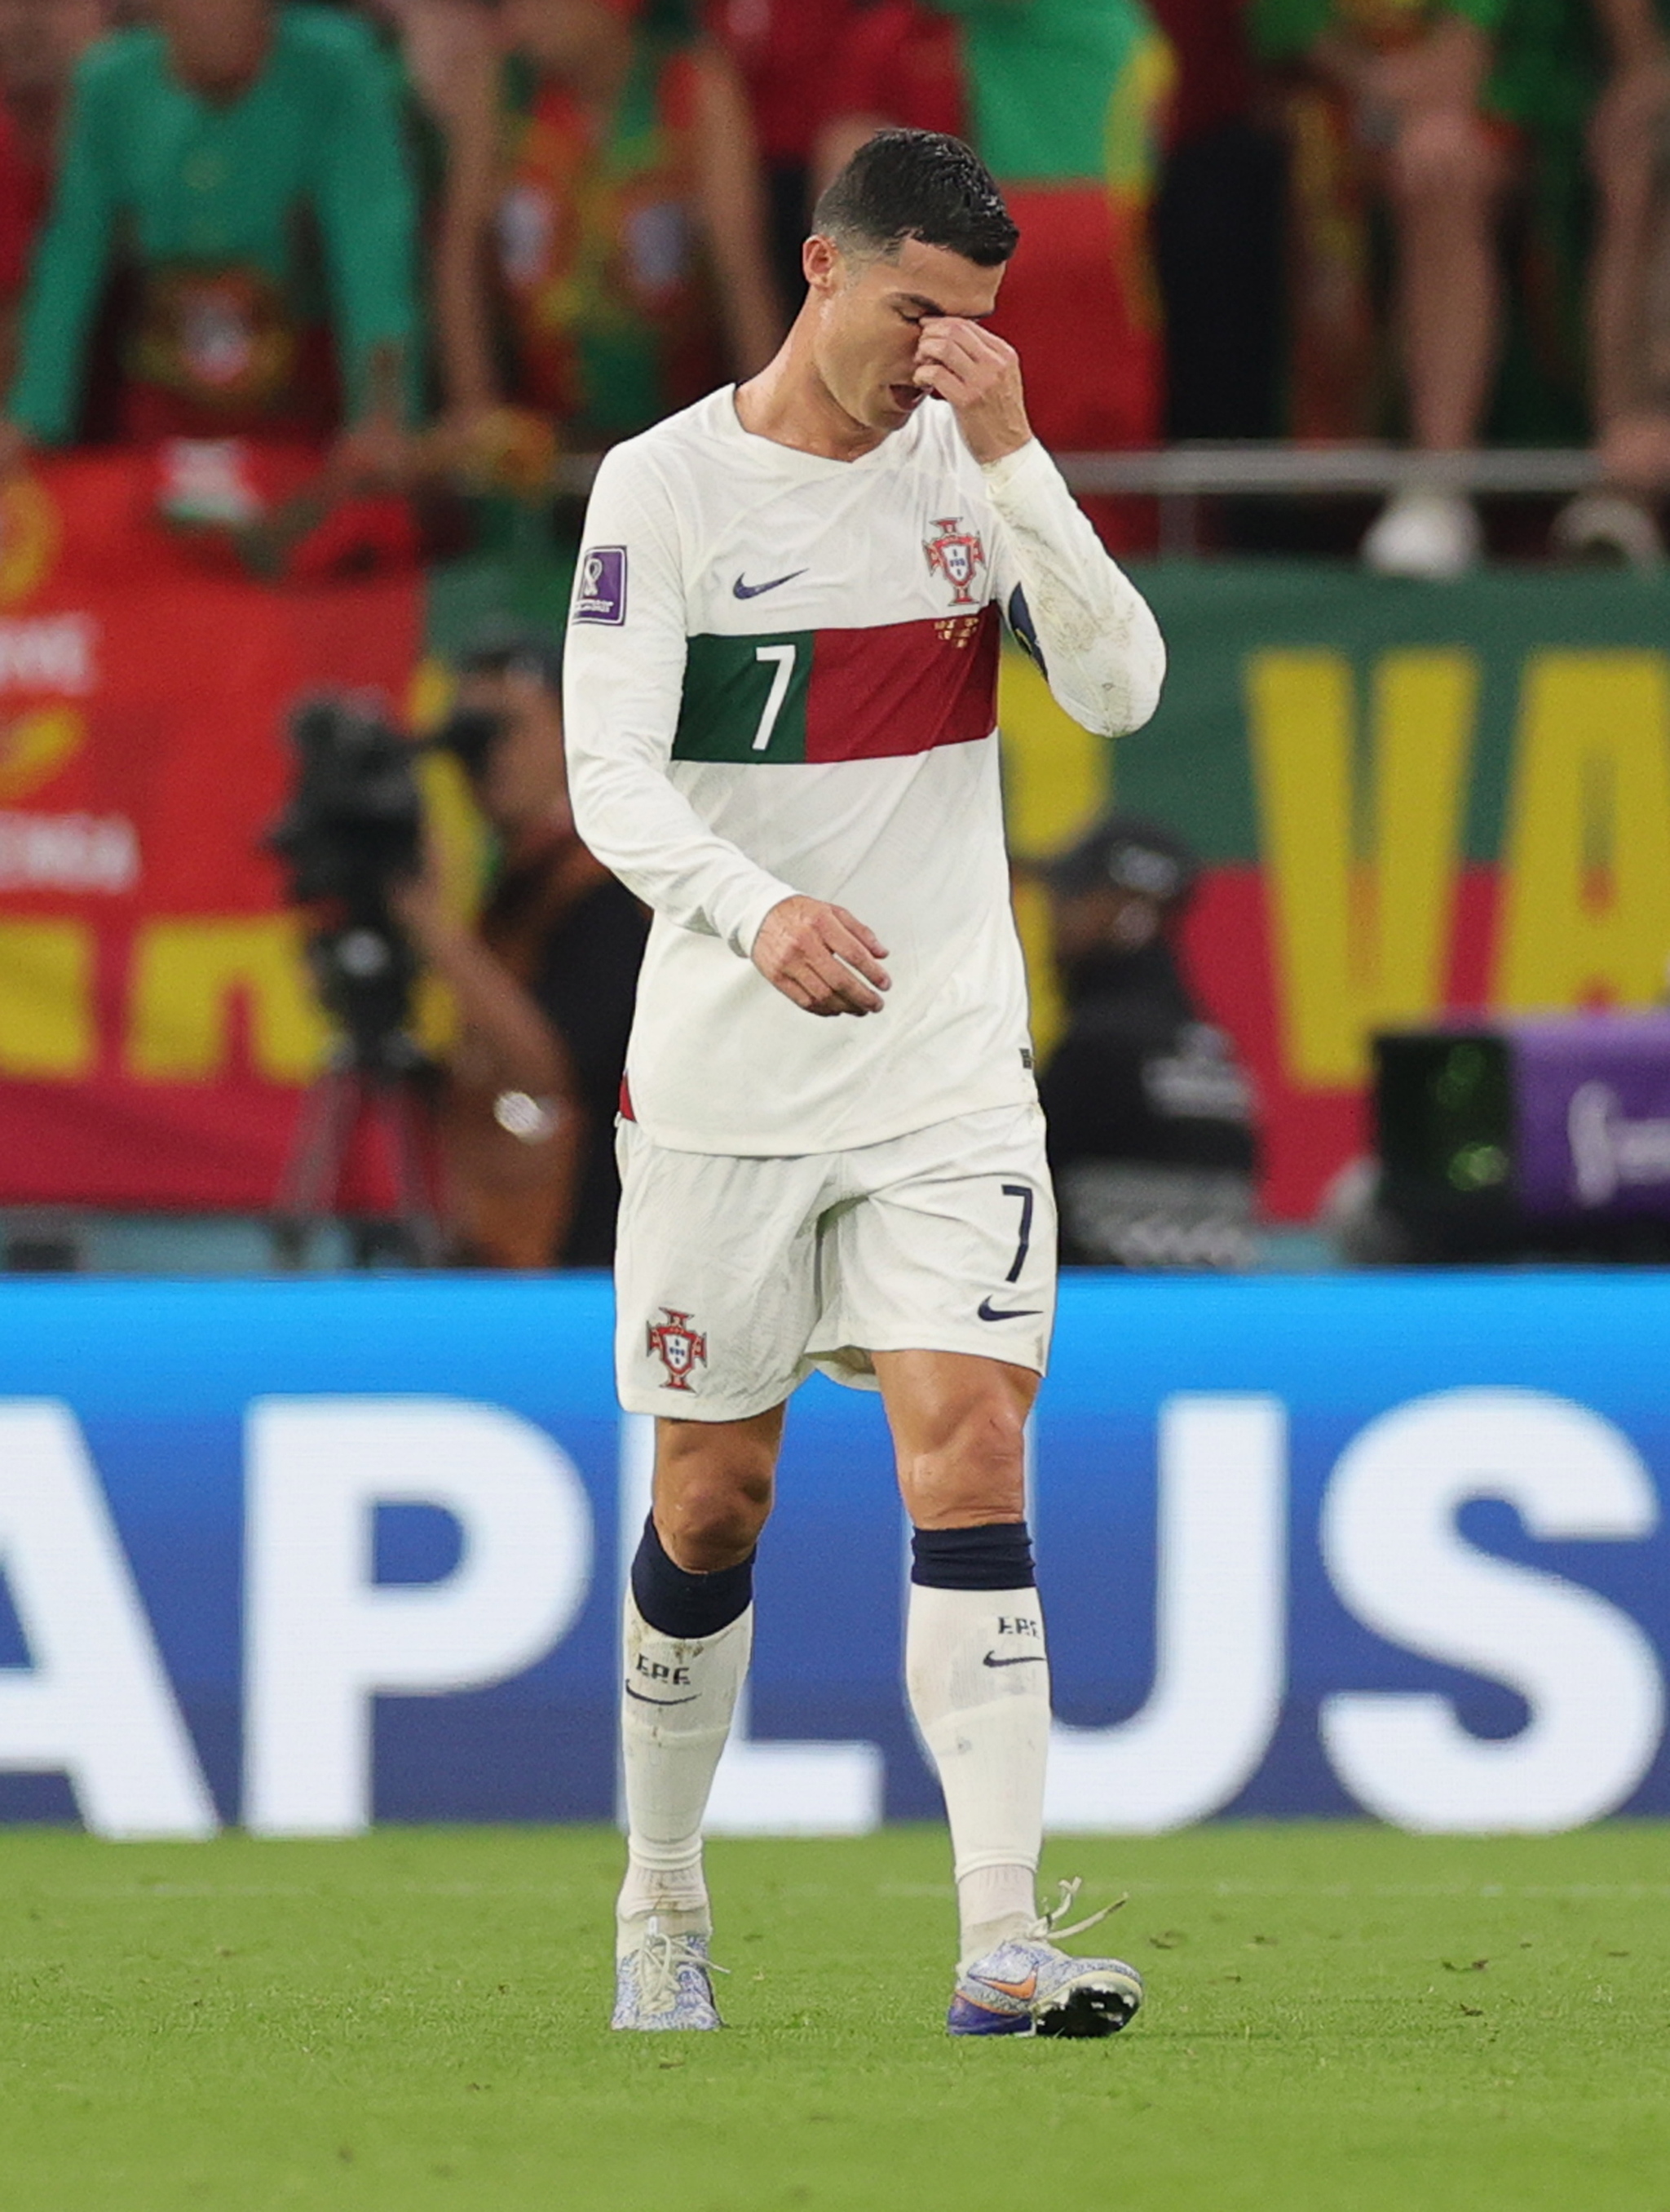 Ronaldo đang khóc trong hình nền này và đây là một bức ảnh tuyệt vời để thể hiện sự kiên trì và cảm xúc. Nếu bạn muốn truyền cảm hứng và đam mê, hãy xem ngay hình nền này!